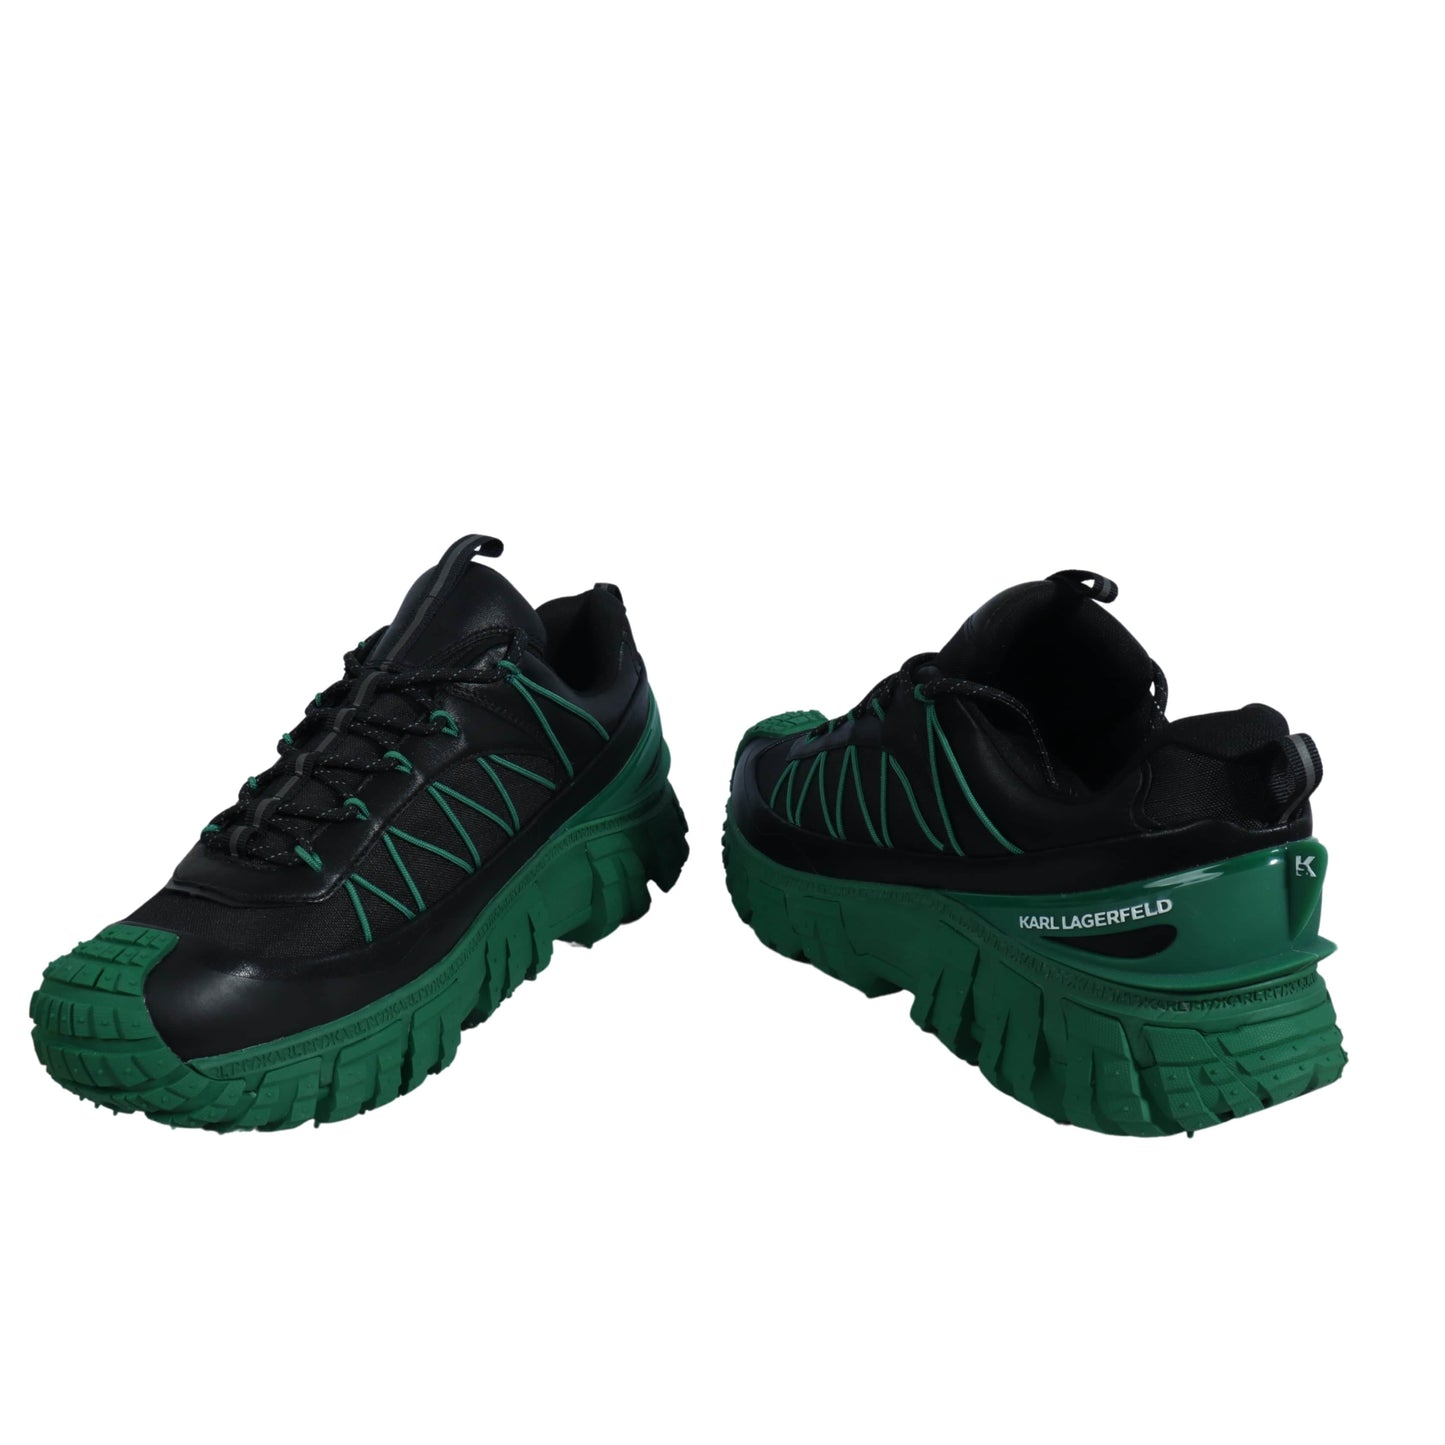 KARL LAGERFELD Mens Shoes 43 / Black KARL LAGERFELD - Chunky Heeled Sneakers